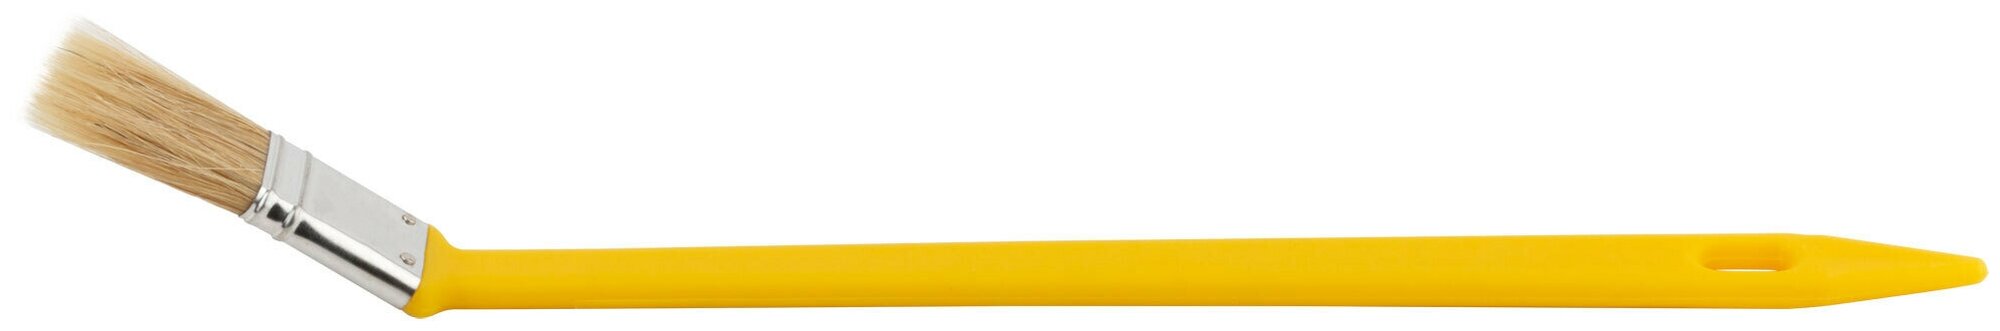 Кисть радиаторная натуральная светлая щетина желтая пластиковая ручка 1